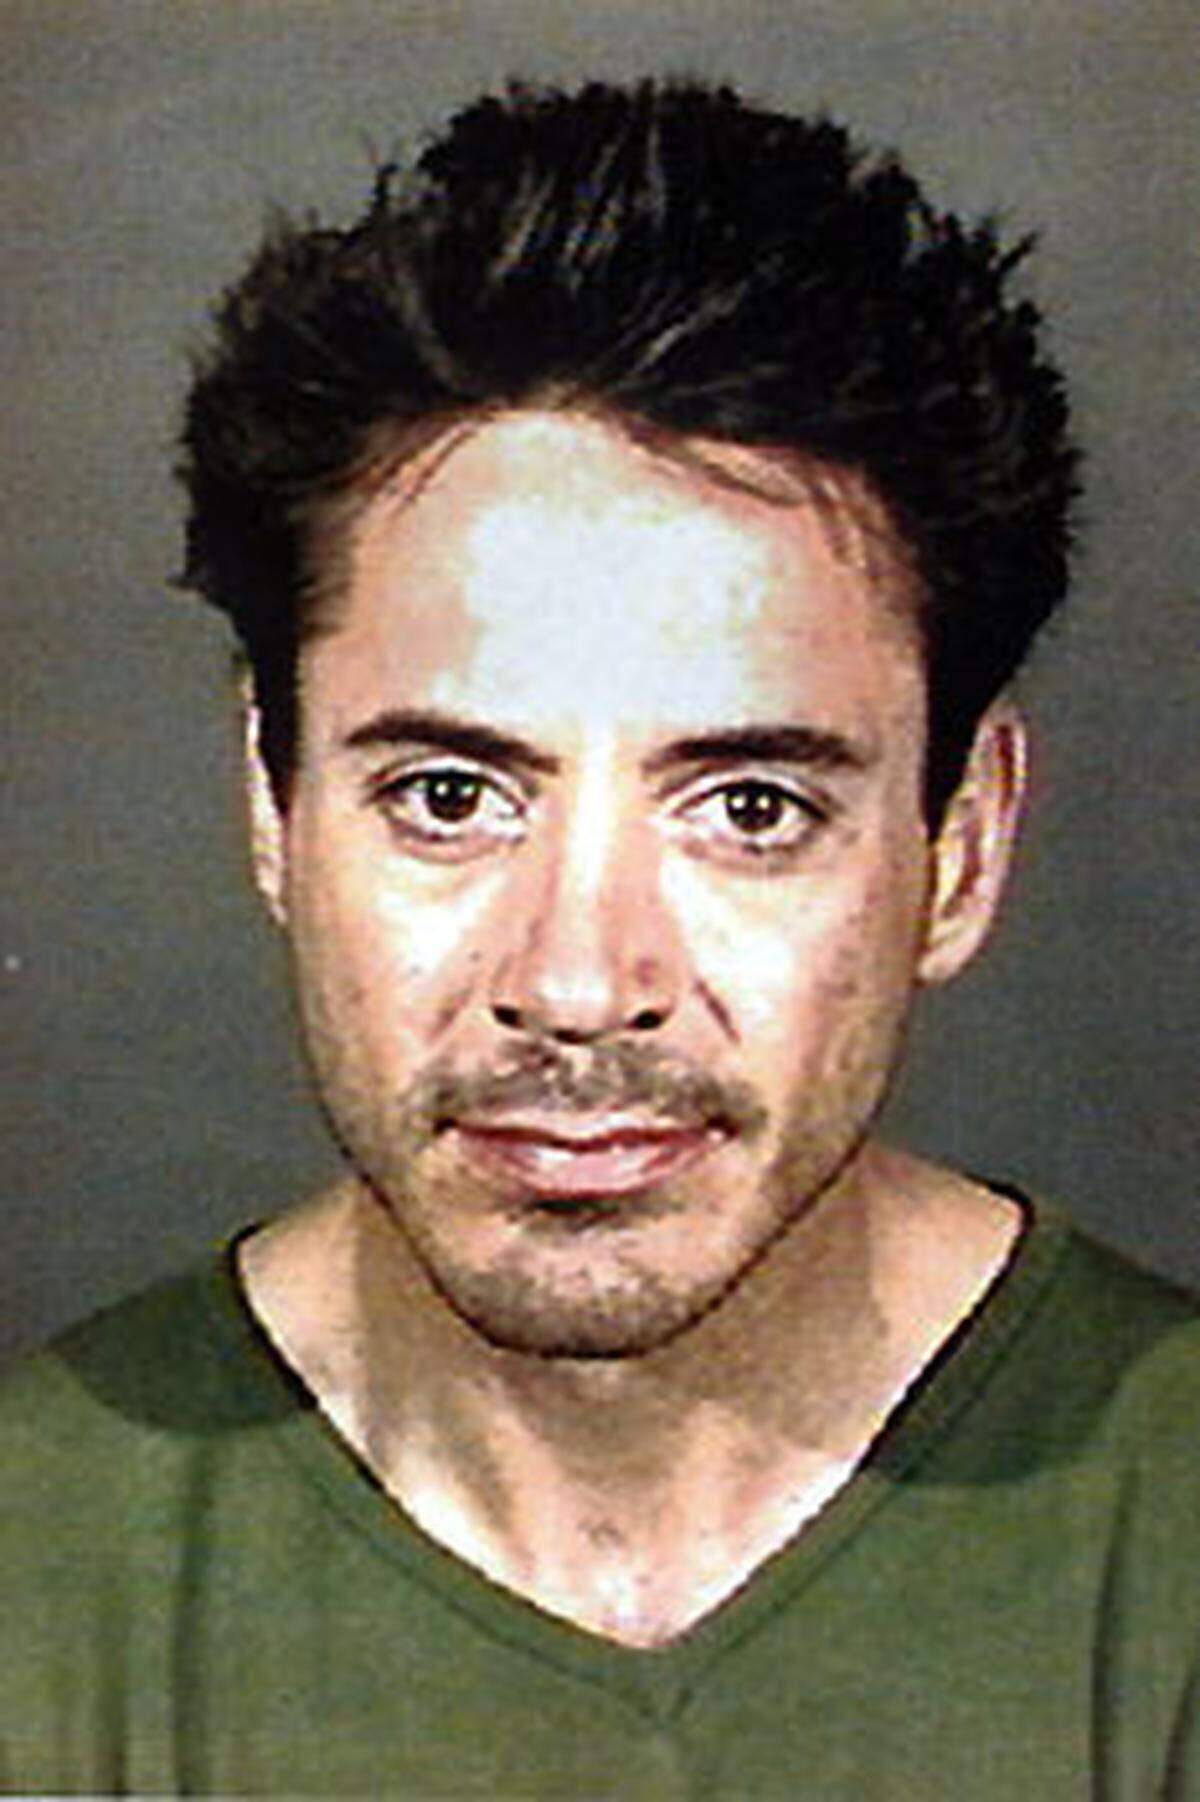 Im Gegensatz zu Lohan, Barton und dem Rest der Party-Truppe übernimmt Robert Downey Jr. wohl die Rolle des Schirmherren. Downey war bereits in den 90ern inhaftiert. Grund war sein Drogenkonsum, nach etlichen Entzugstherapien ist er spätestens seit 2003 wieder als Schauspieler im Rennen.